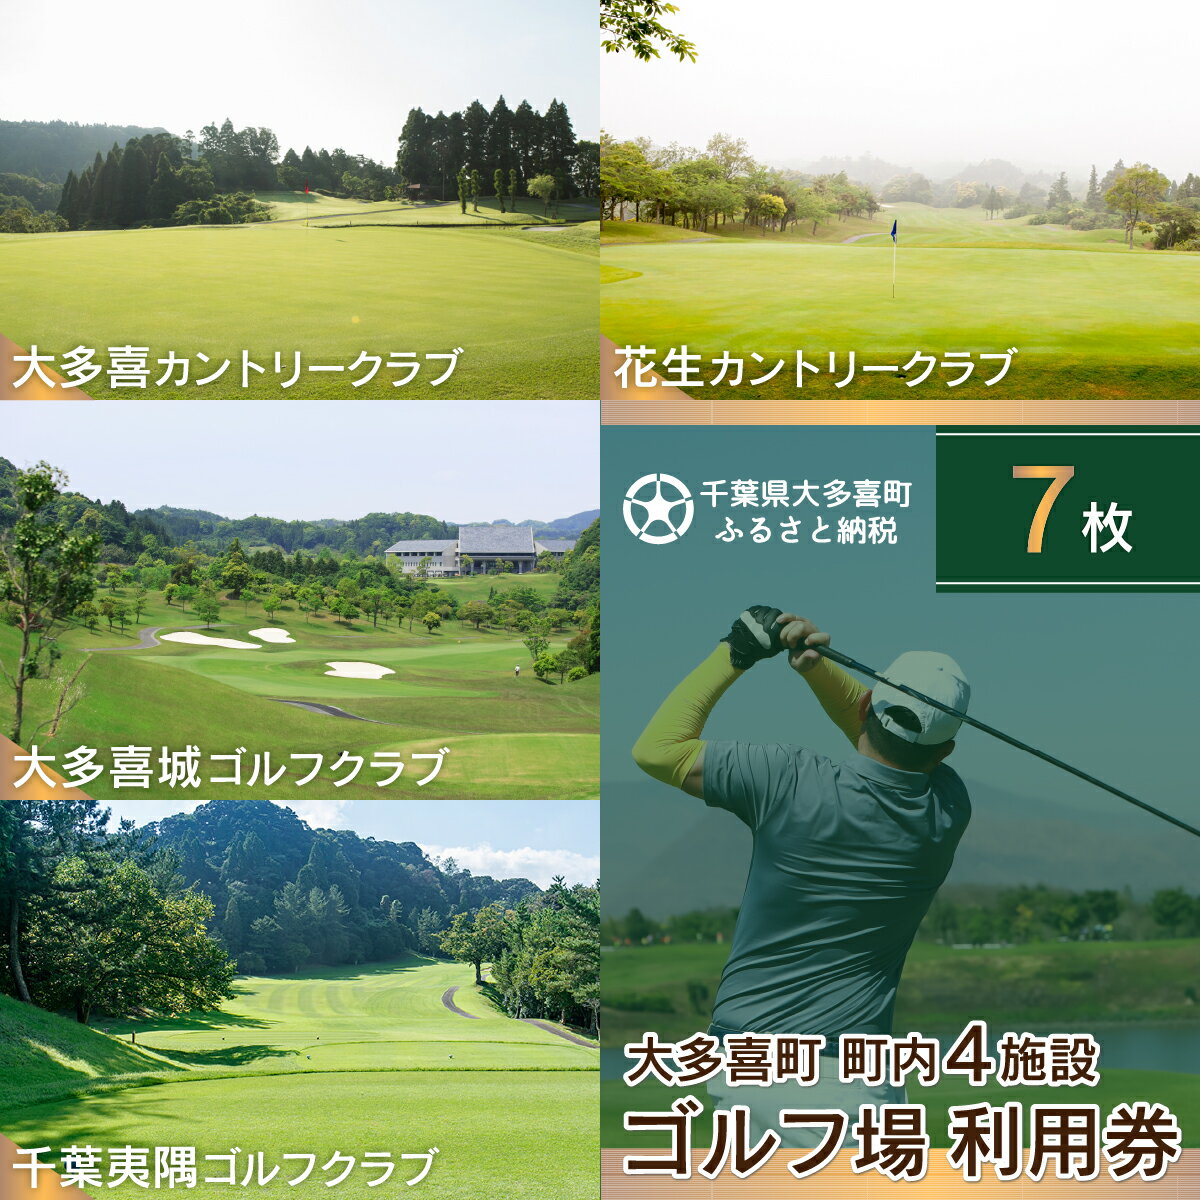 【ふるさと納税】大多喜町内ゴルフ場利用券 7枚 ゴルフ ゴル